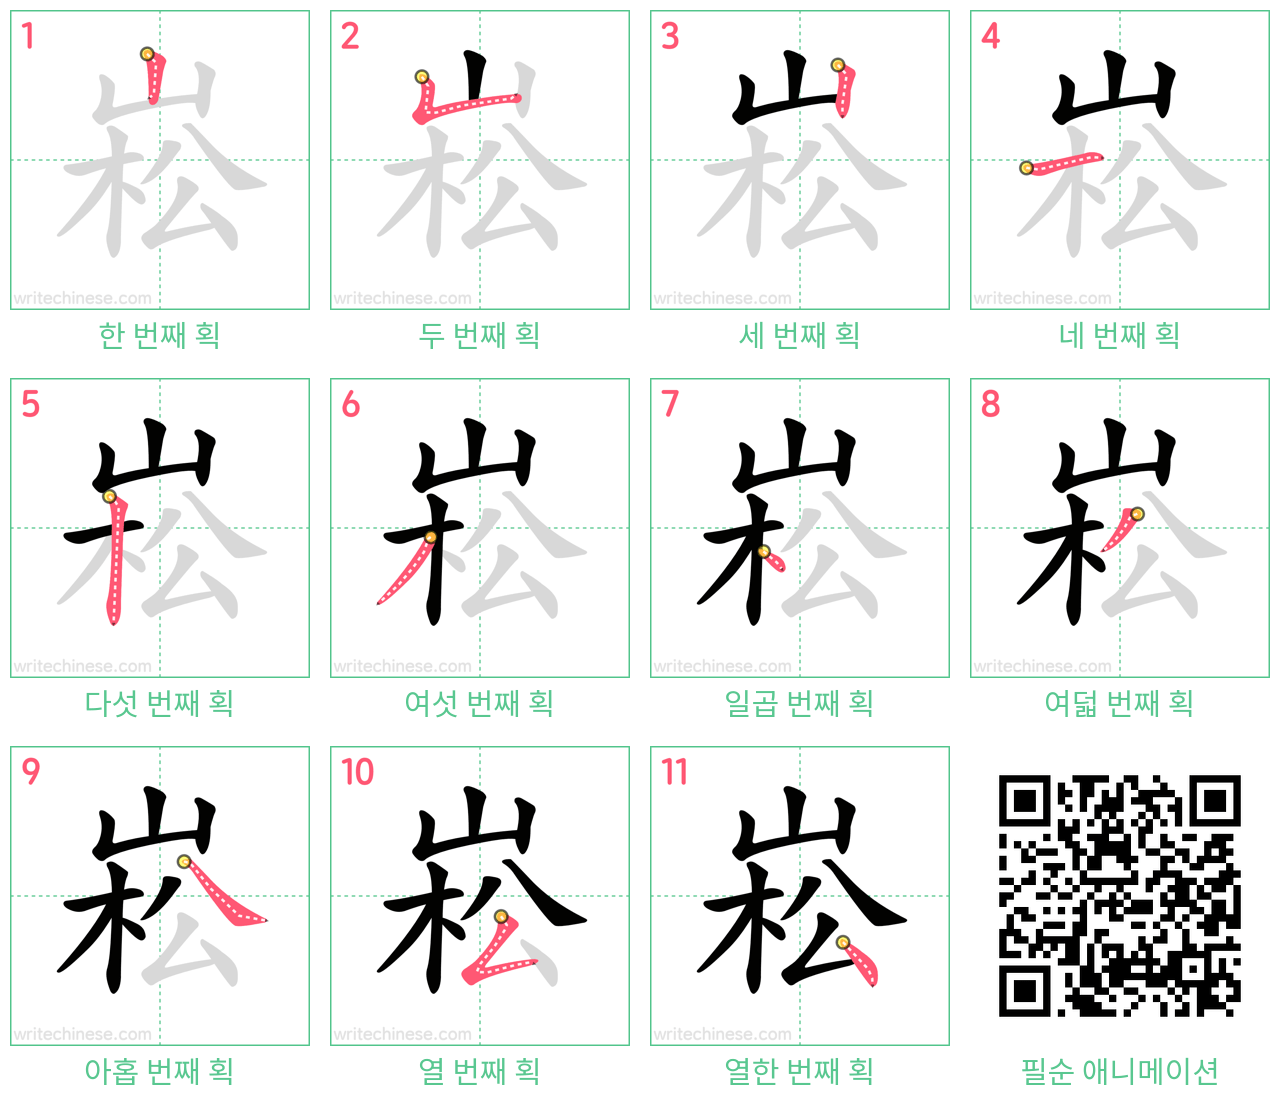 崧 step-by-step stroke order diagrams